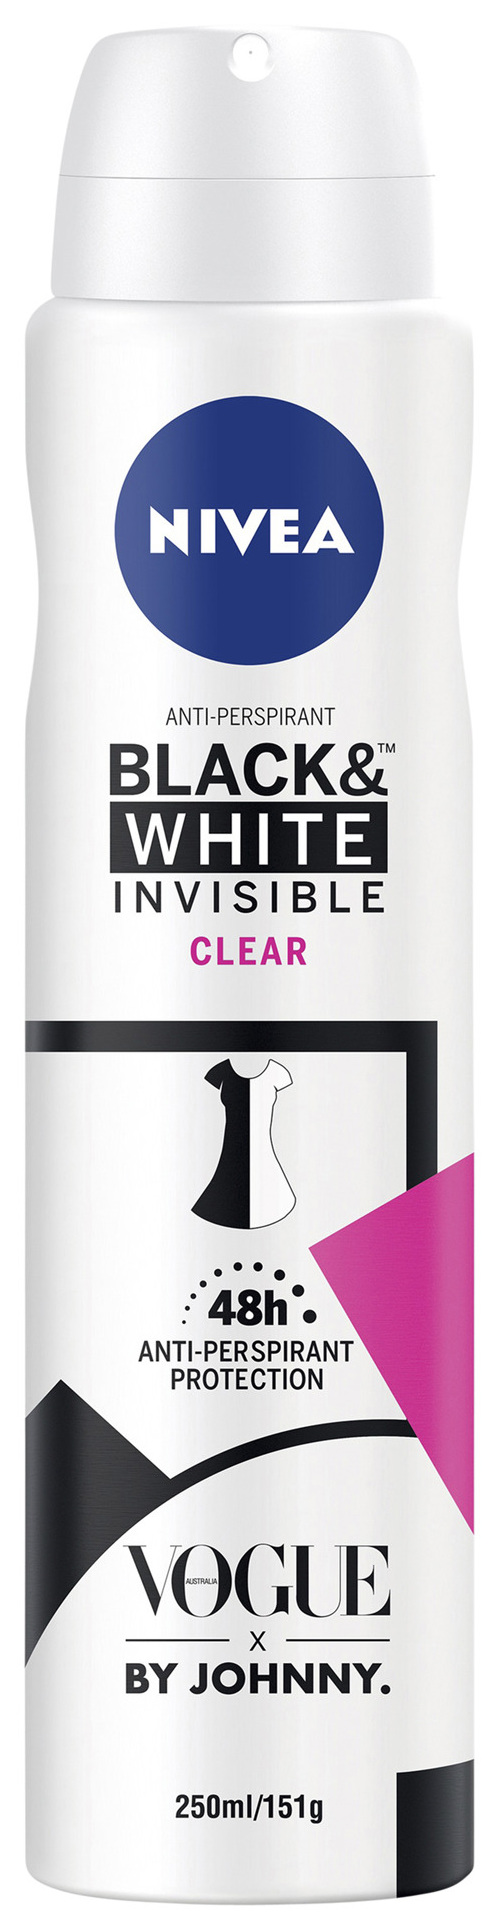 NIVEA Invisible Black & White Clear Aerosol 250mL